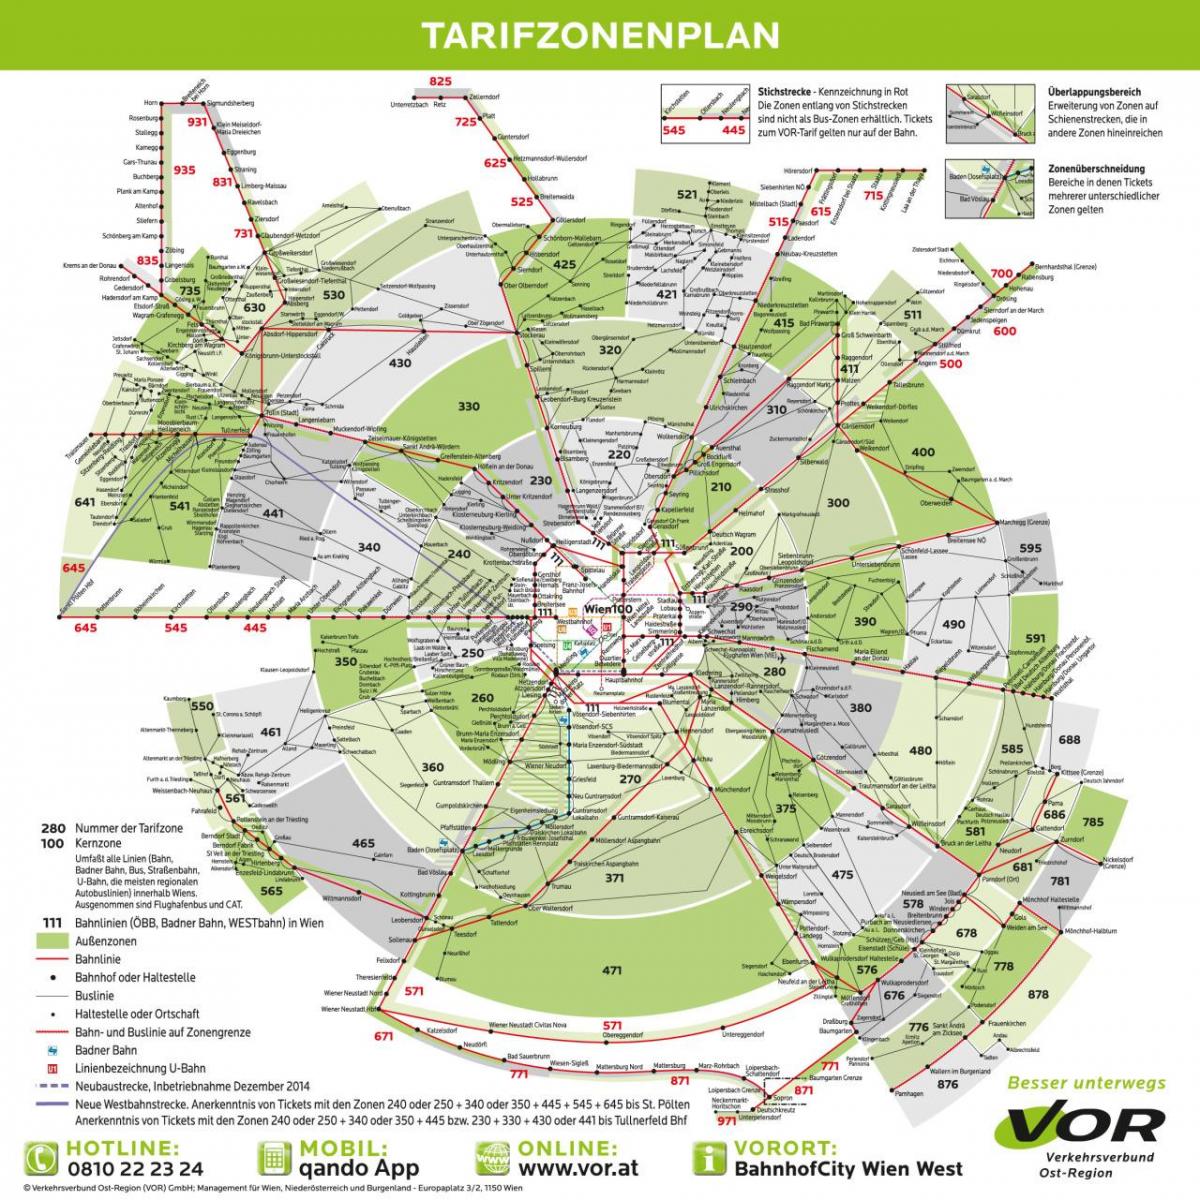 Kort over Wien transport zoner